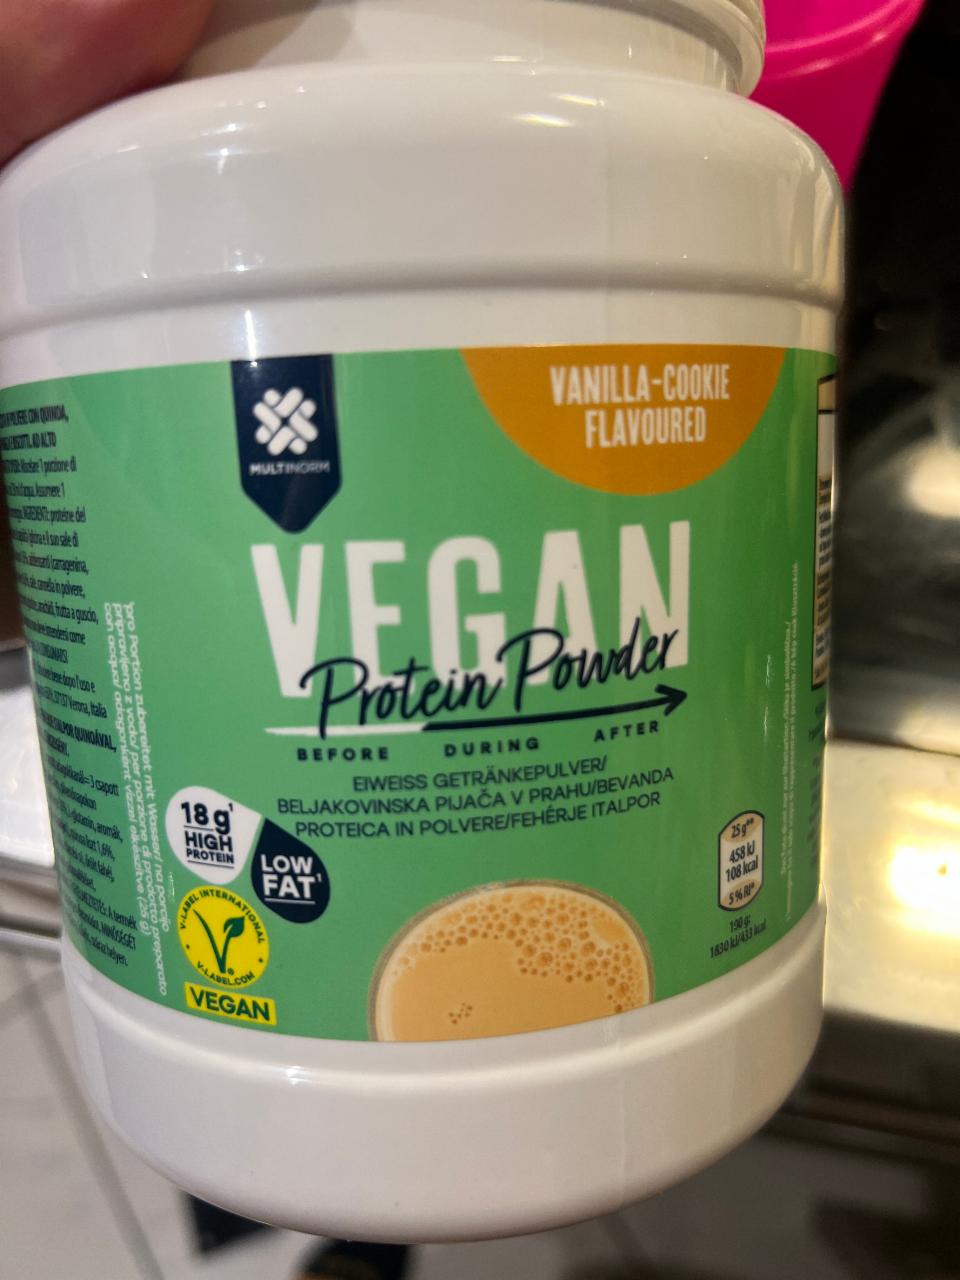 Fotografie - Vegan protein powder Vanilla-Cookie flavoured Multinorm